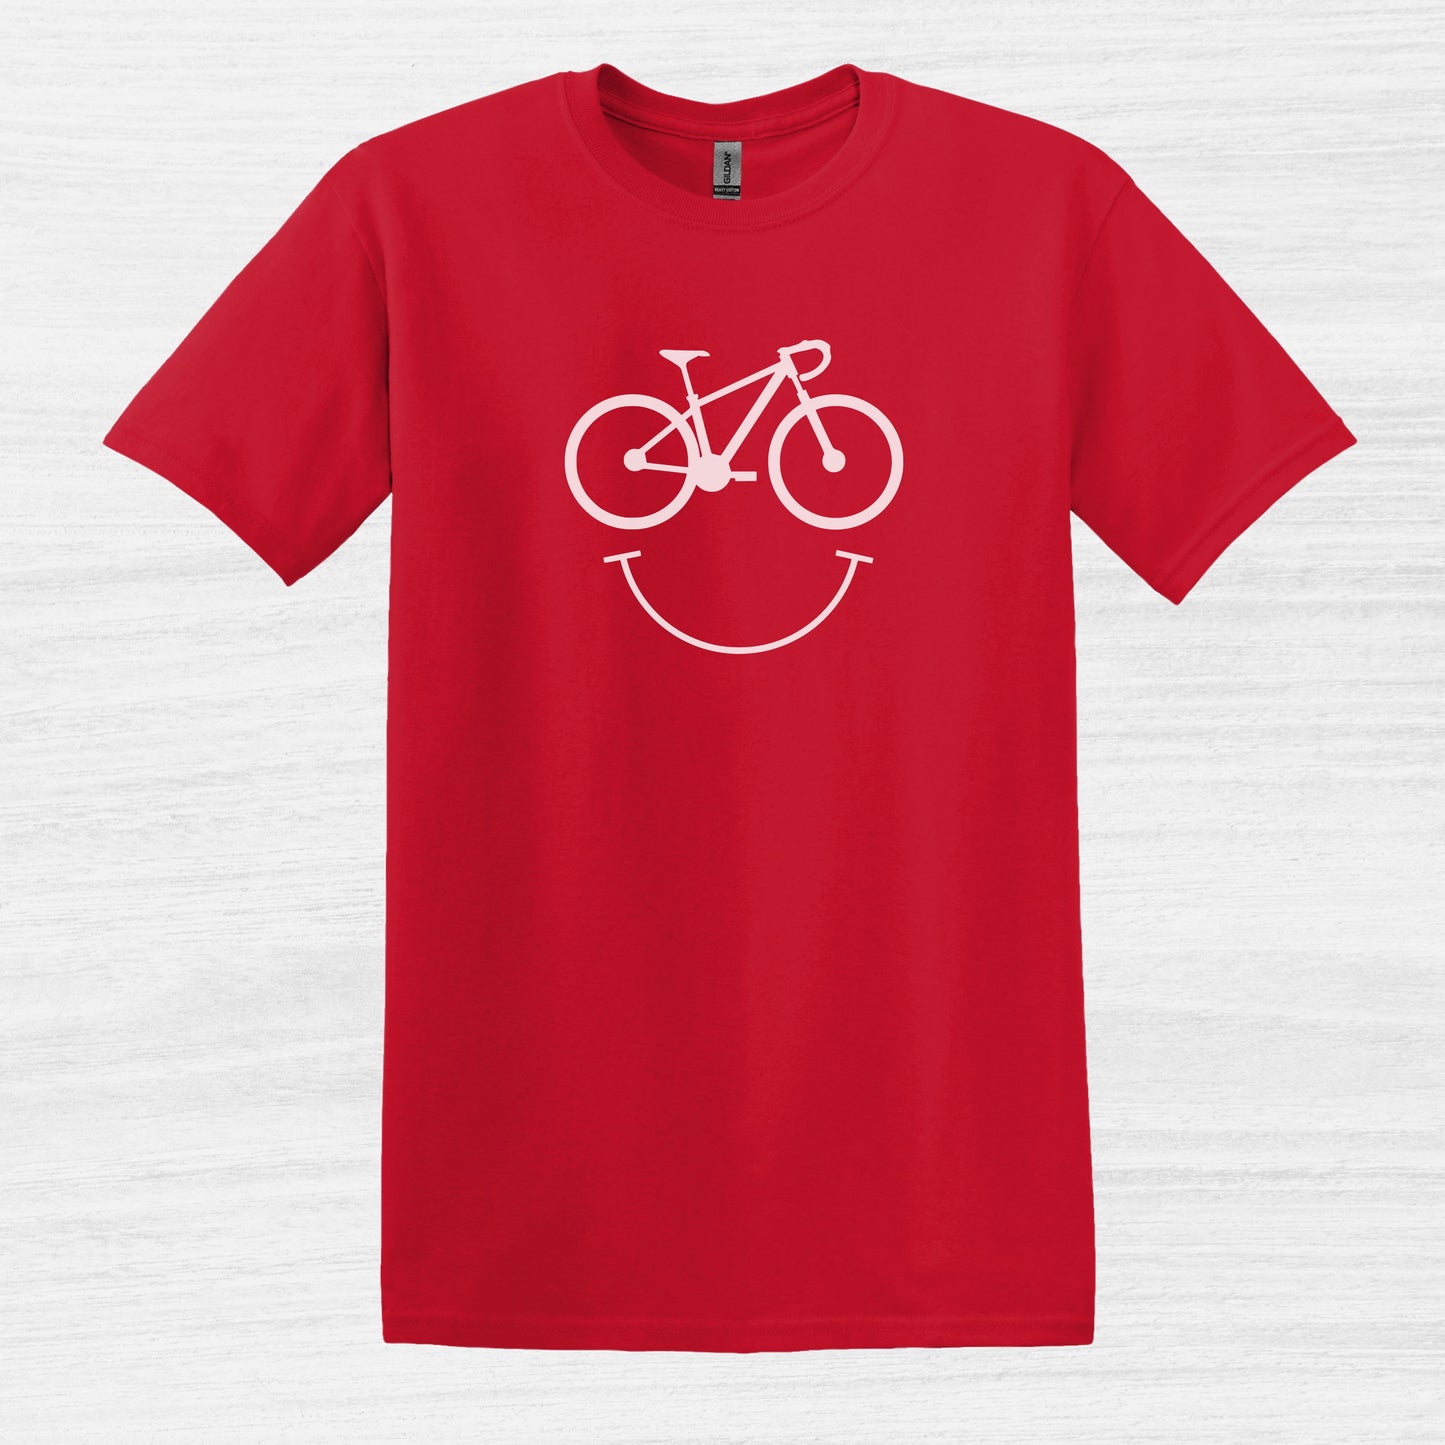 Bike Bliss Happy Mountain Bike T-Shirt for Men Outdoor Cycling Red 2